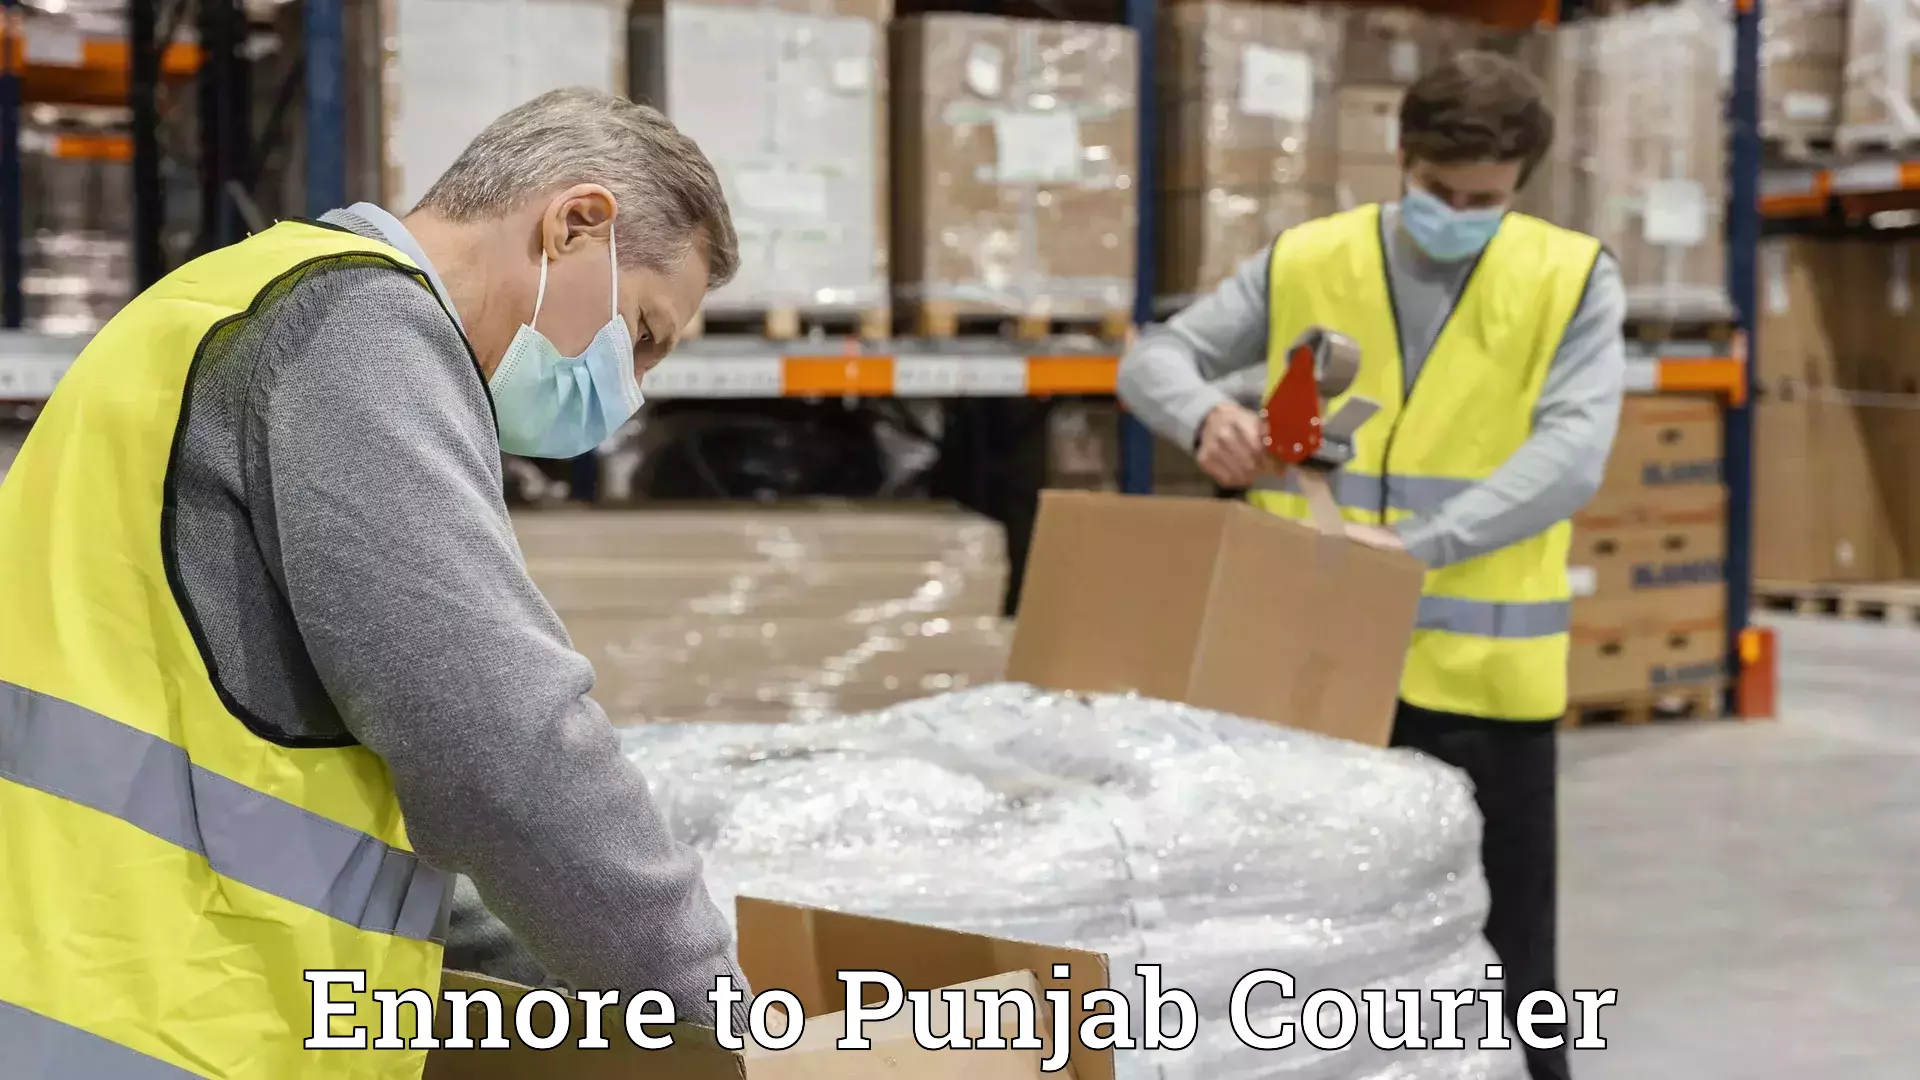 Furniture moving experts Ennore to Punjab